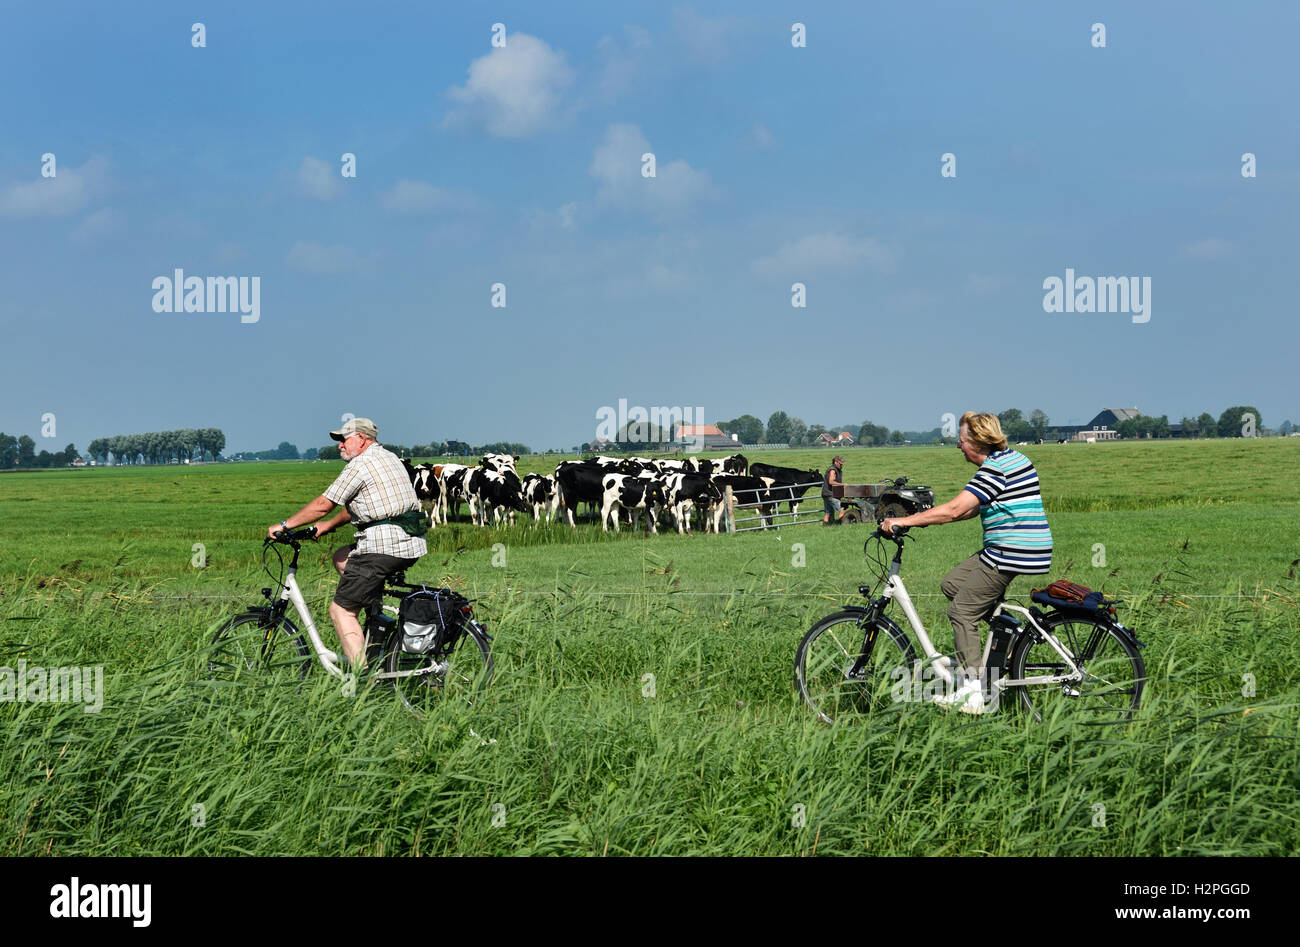 Hombre Mujer Personas Jubiladas vacas Vaca Granja hierba verde paisaje agrícola Frisia Fryslan bicicletas eléctricas ( Países Bajos ). Foto de stock